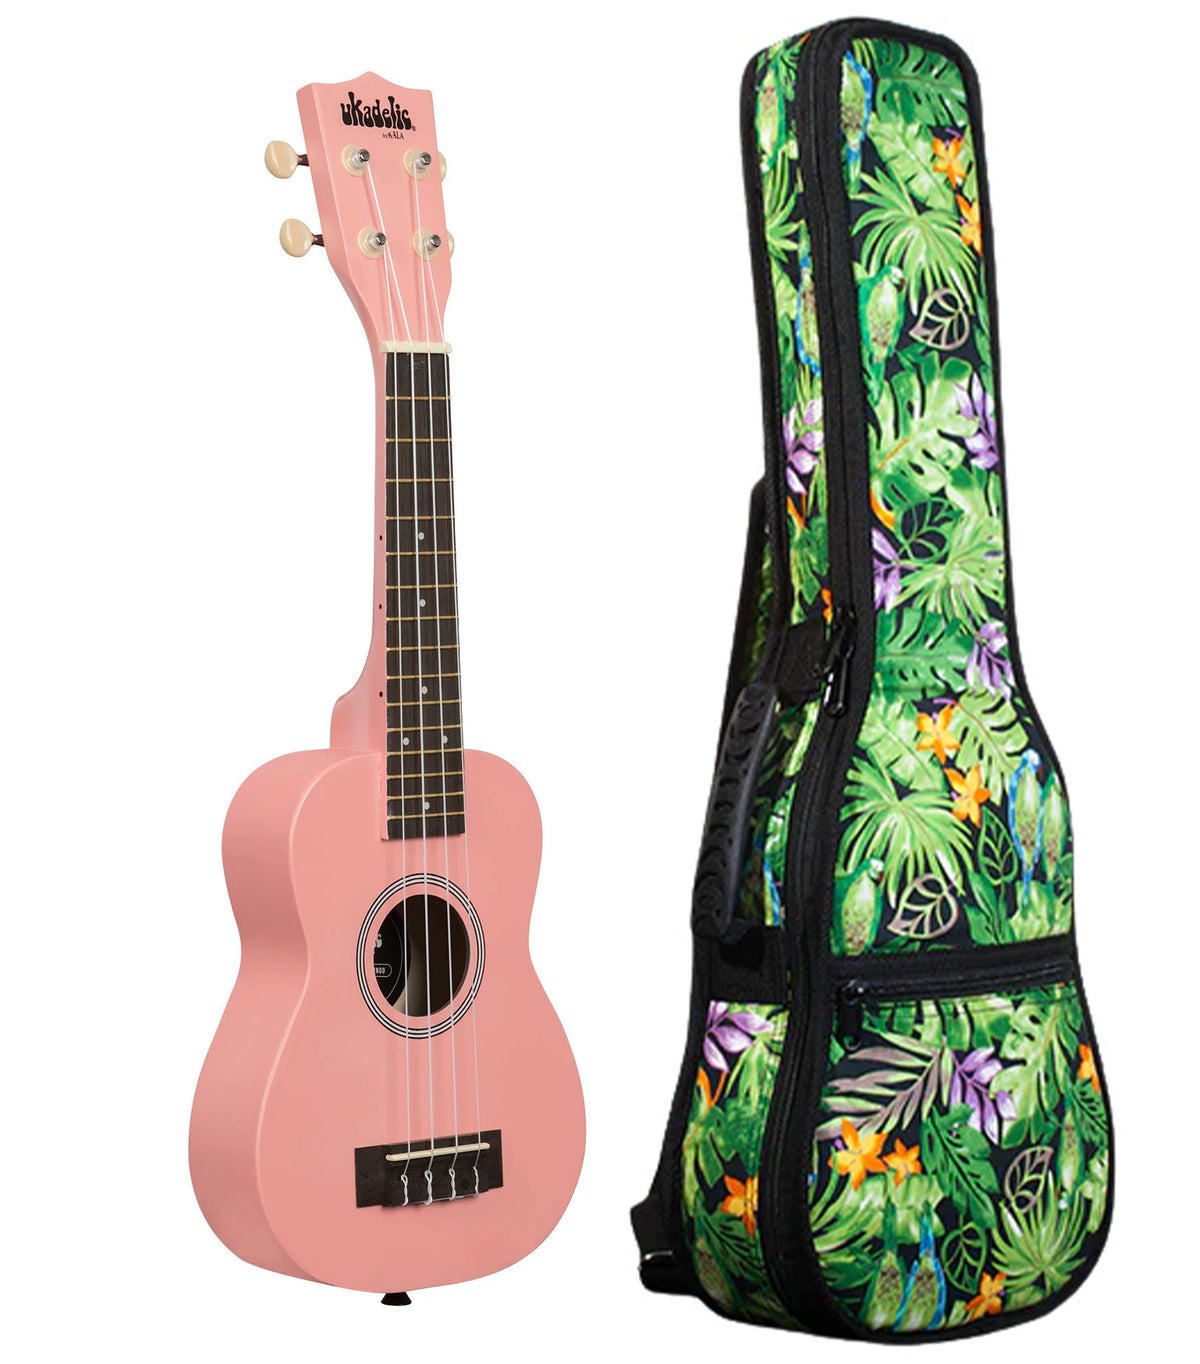 UK-FLAMINGO Flamingo Ukadelic Soprano Ukulele Includes Gigbag Floral Print, Padded with Backpack Straps